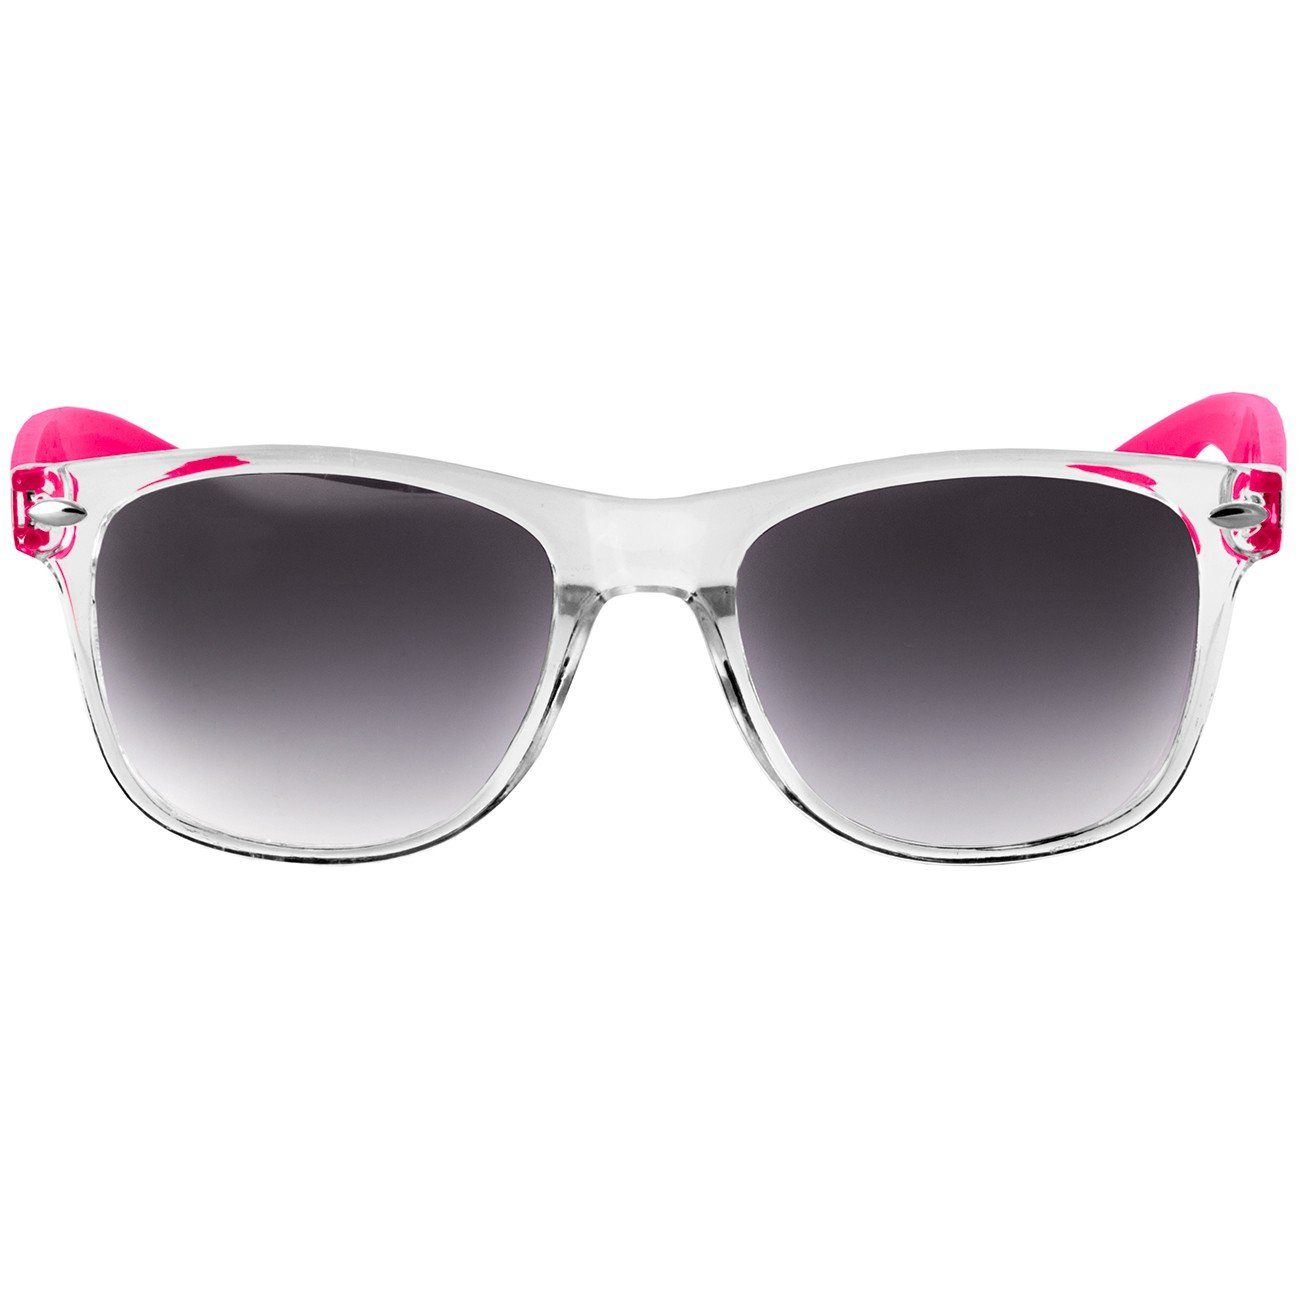 RETRO Caspar Sonnenbrille Designbrille SG017 Damen / blau pink verspiegelt